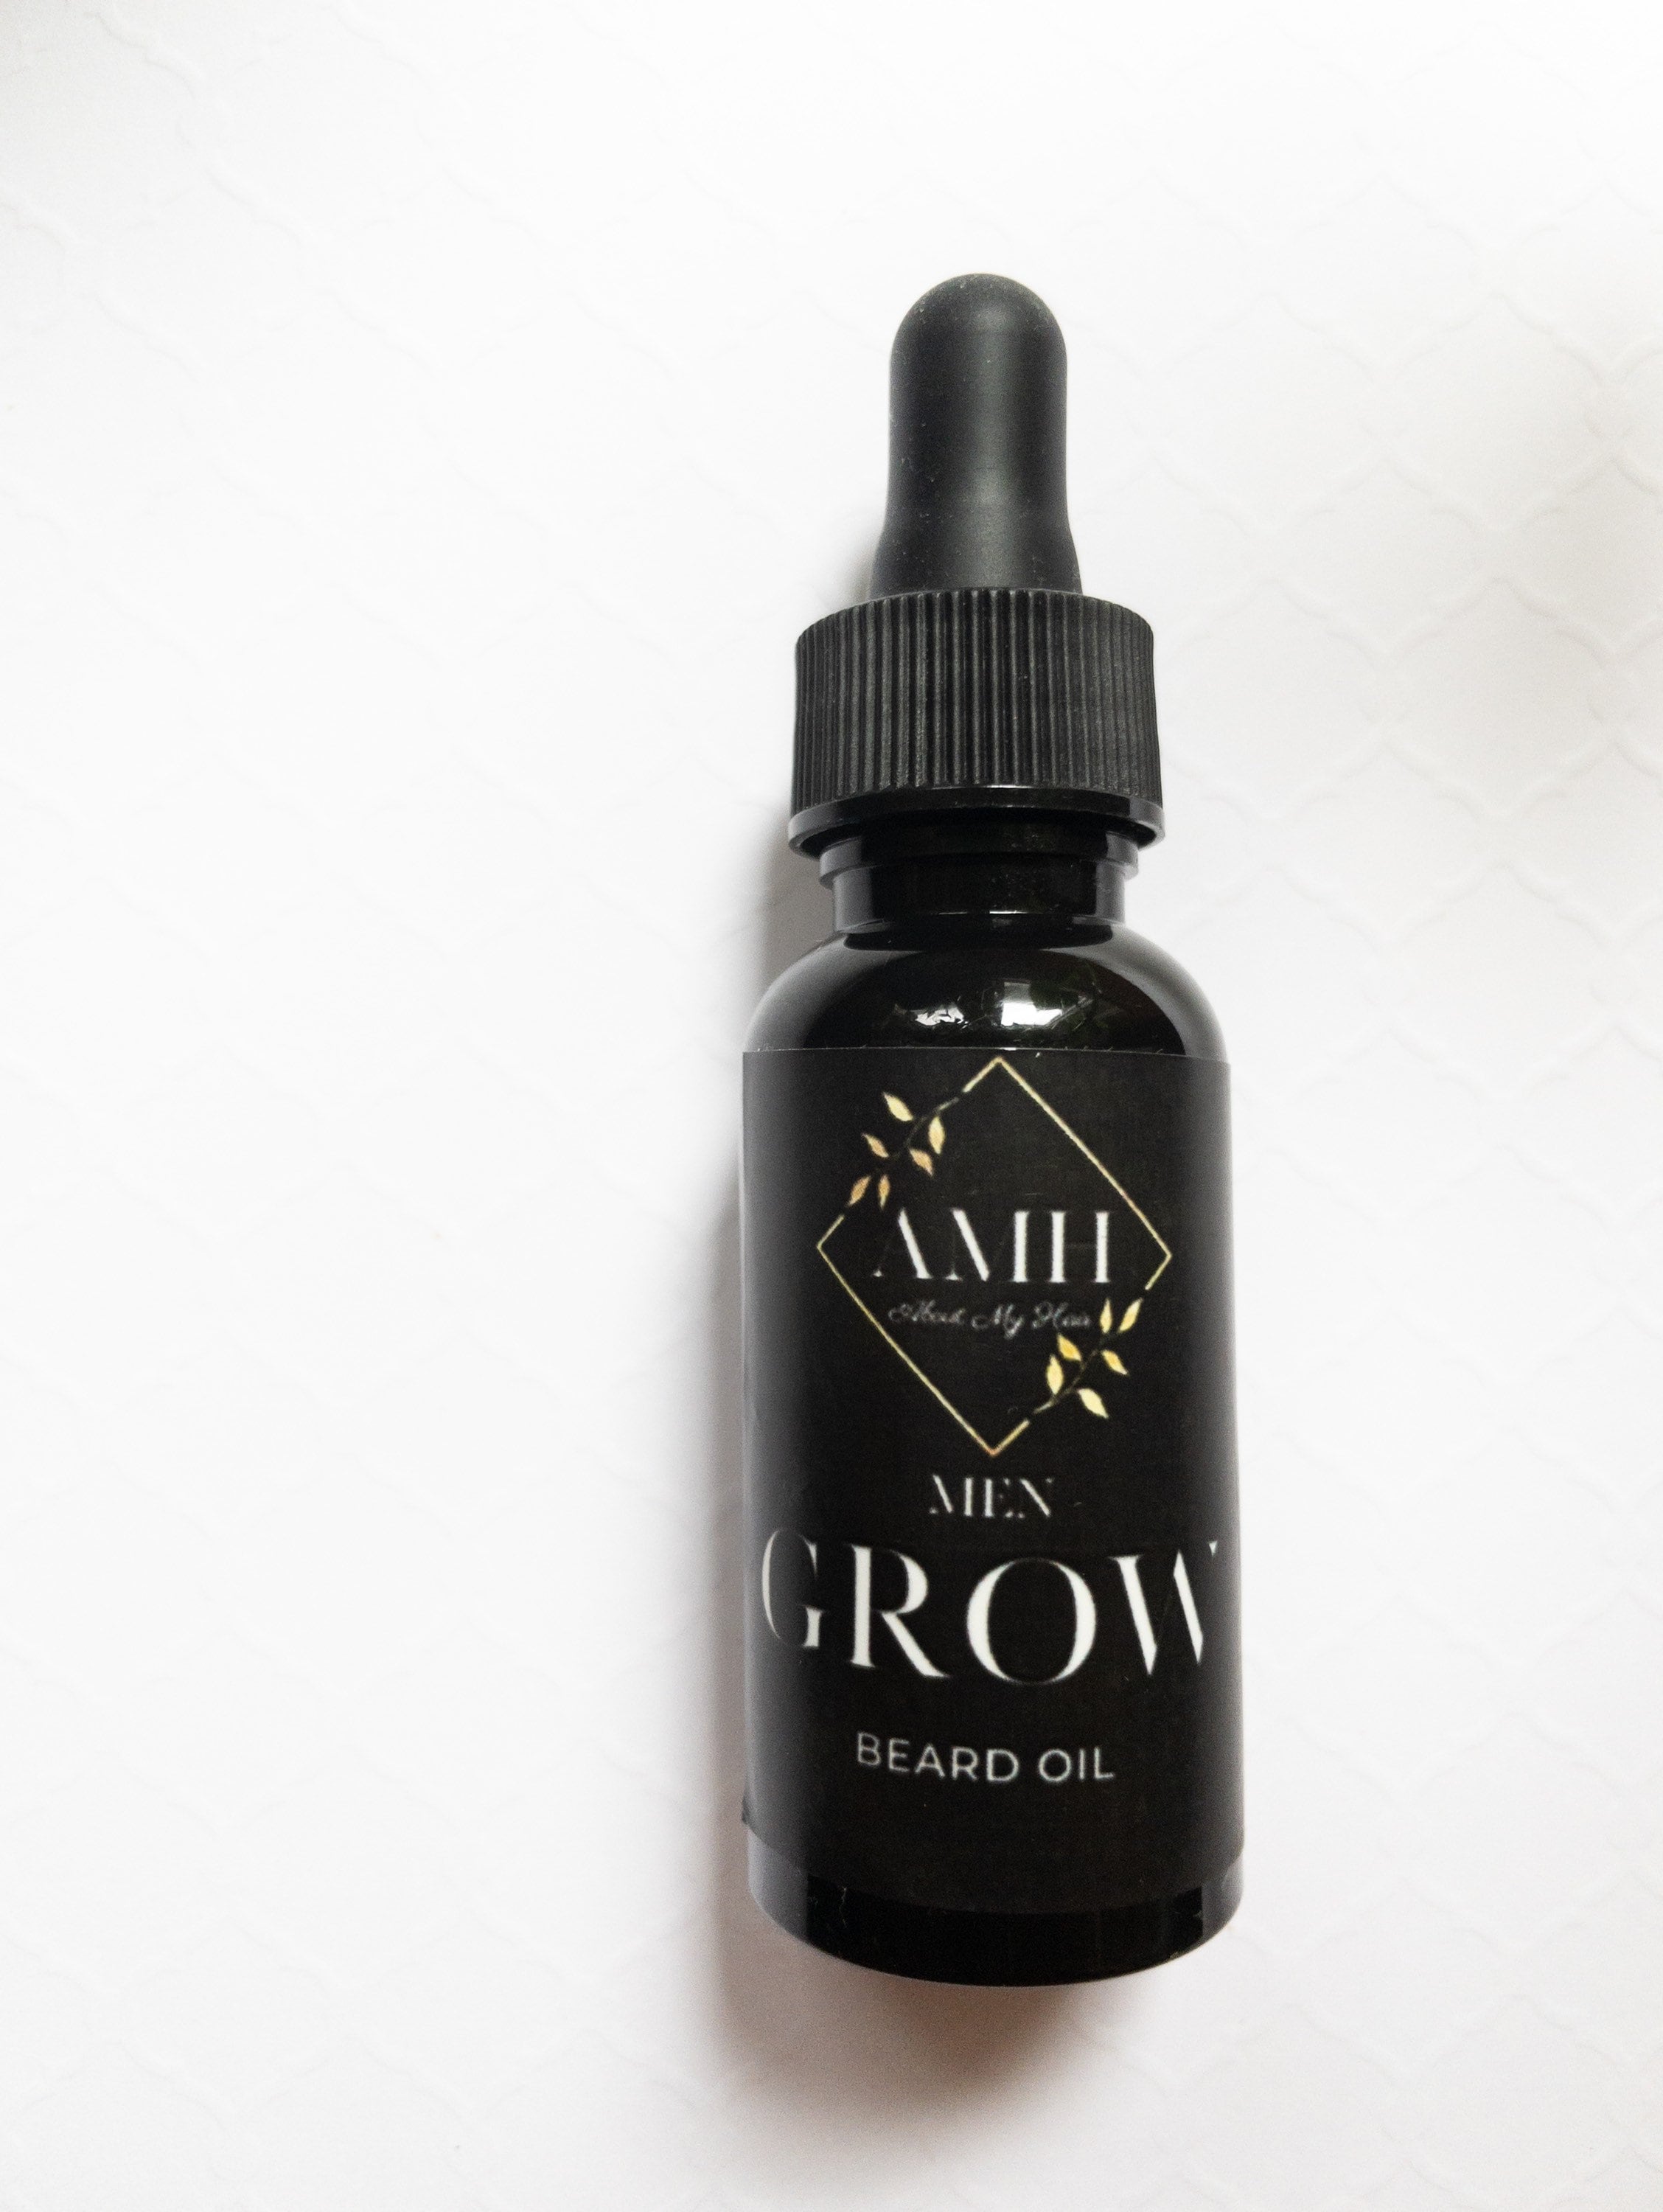 GROW Beard Growth Oil | About My Hair Care